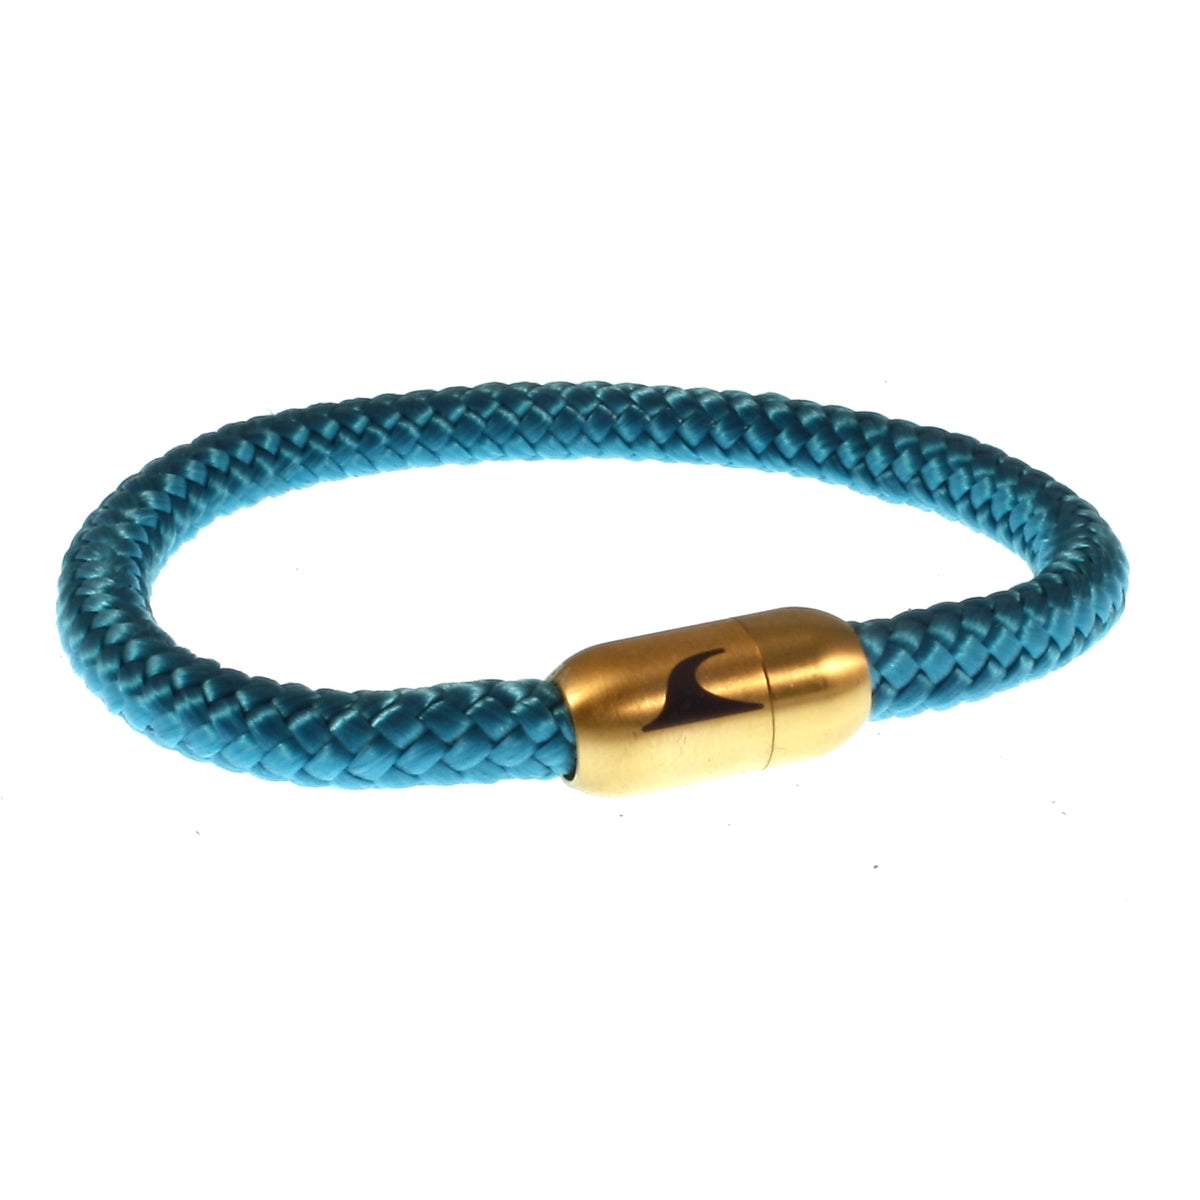 Herren-segeltau-armband-damen-sylt-blau-gold-geflochten-Edelstahlverschluss-vorn-wavepirate-shop-st